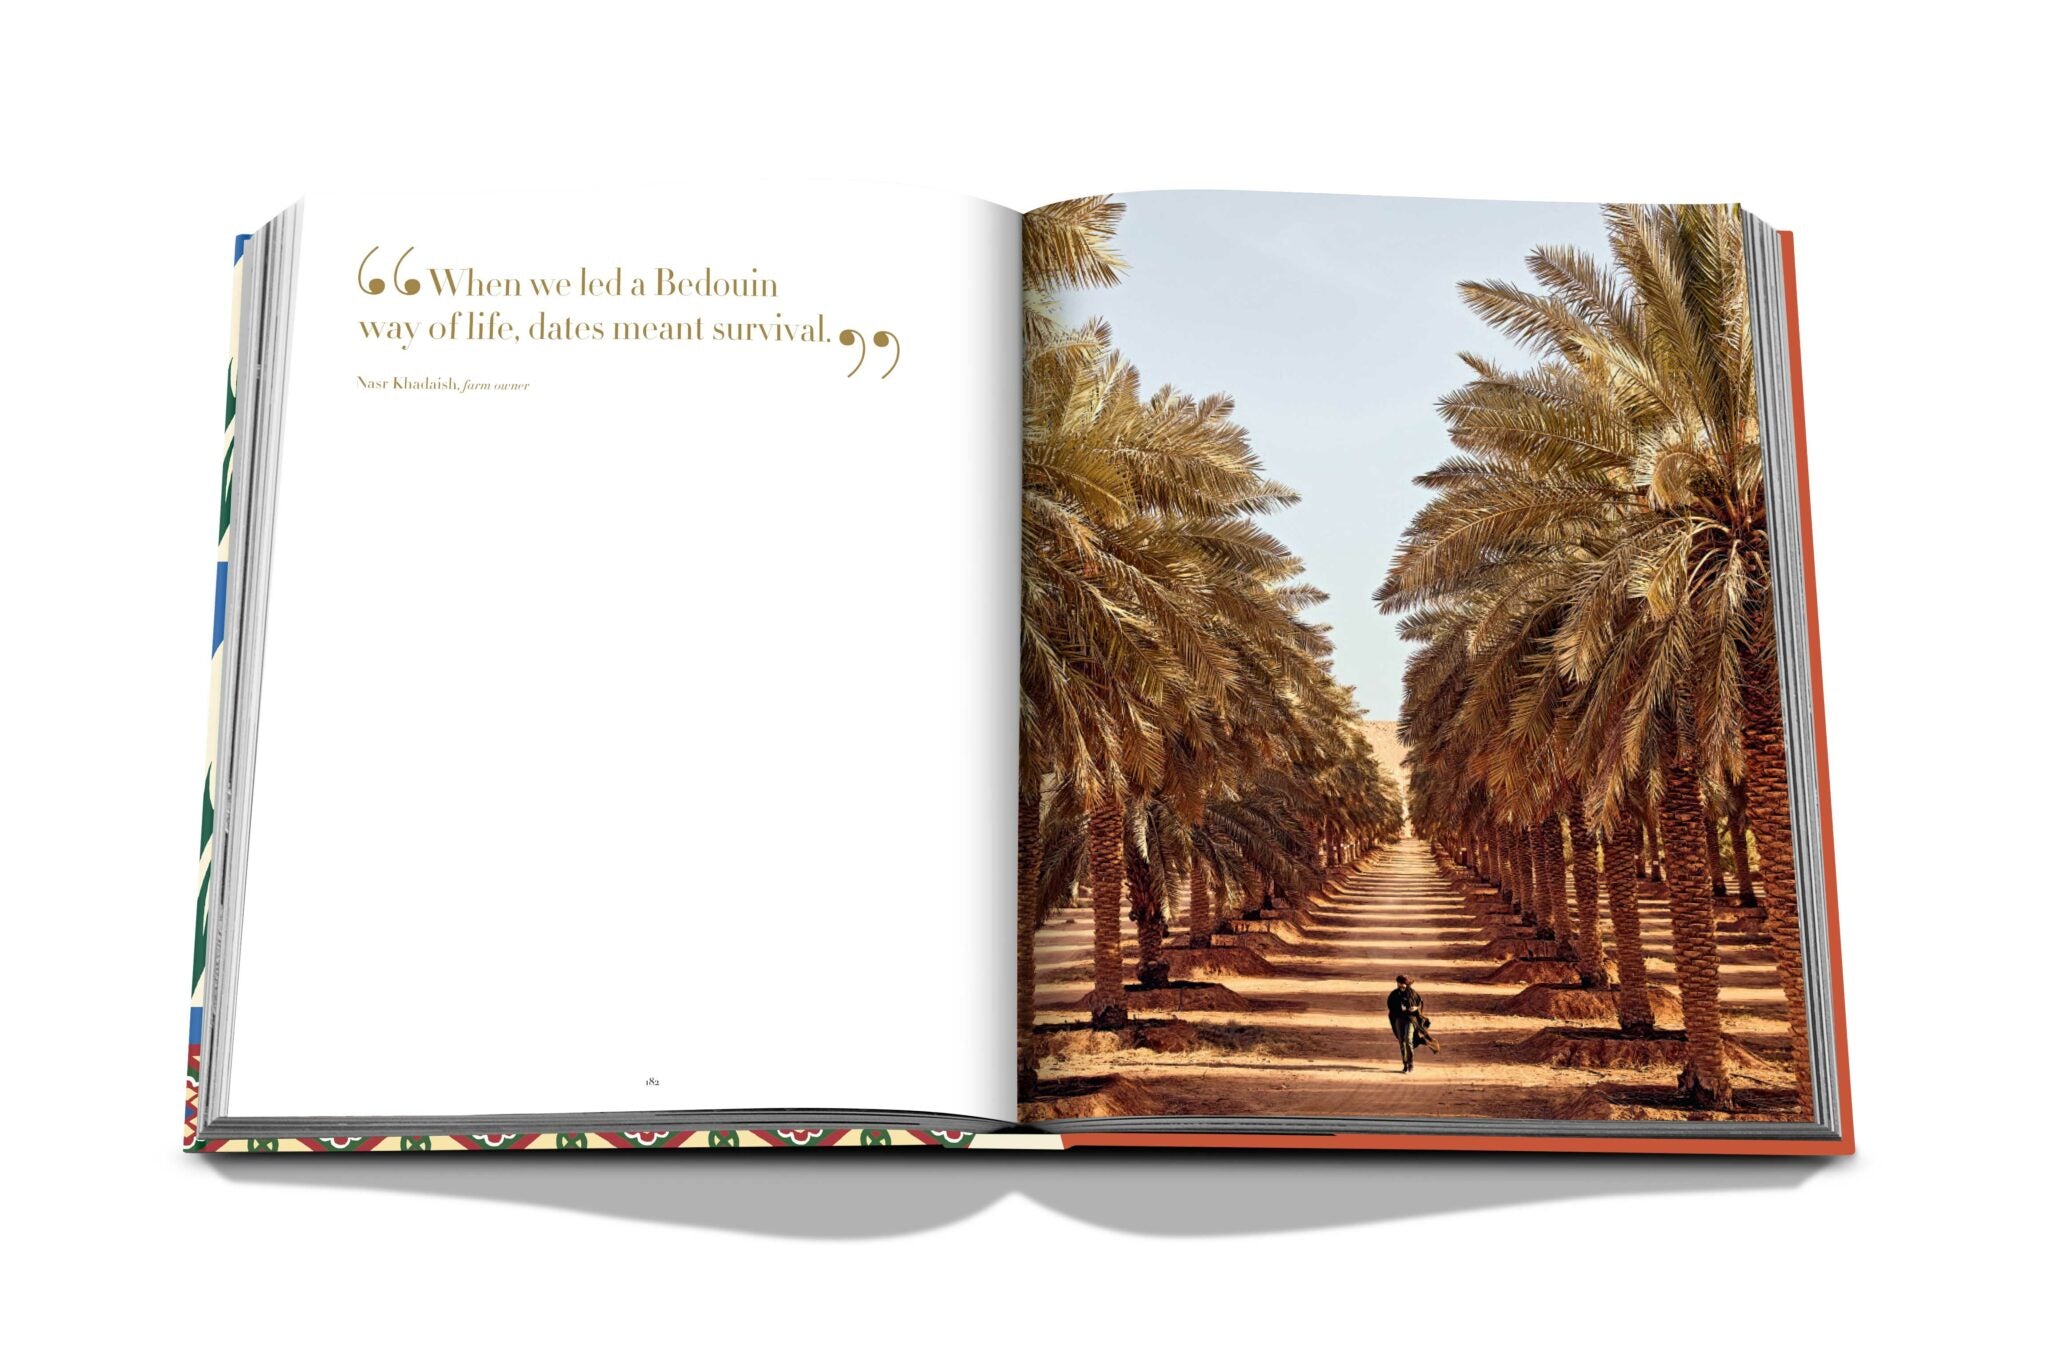 Assouline Saudi -datoer: Et portrett av den hellige frukten